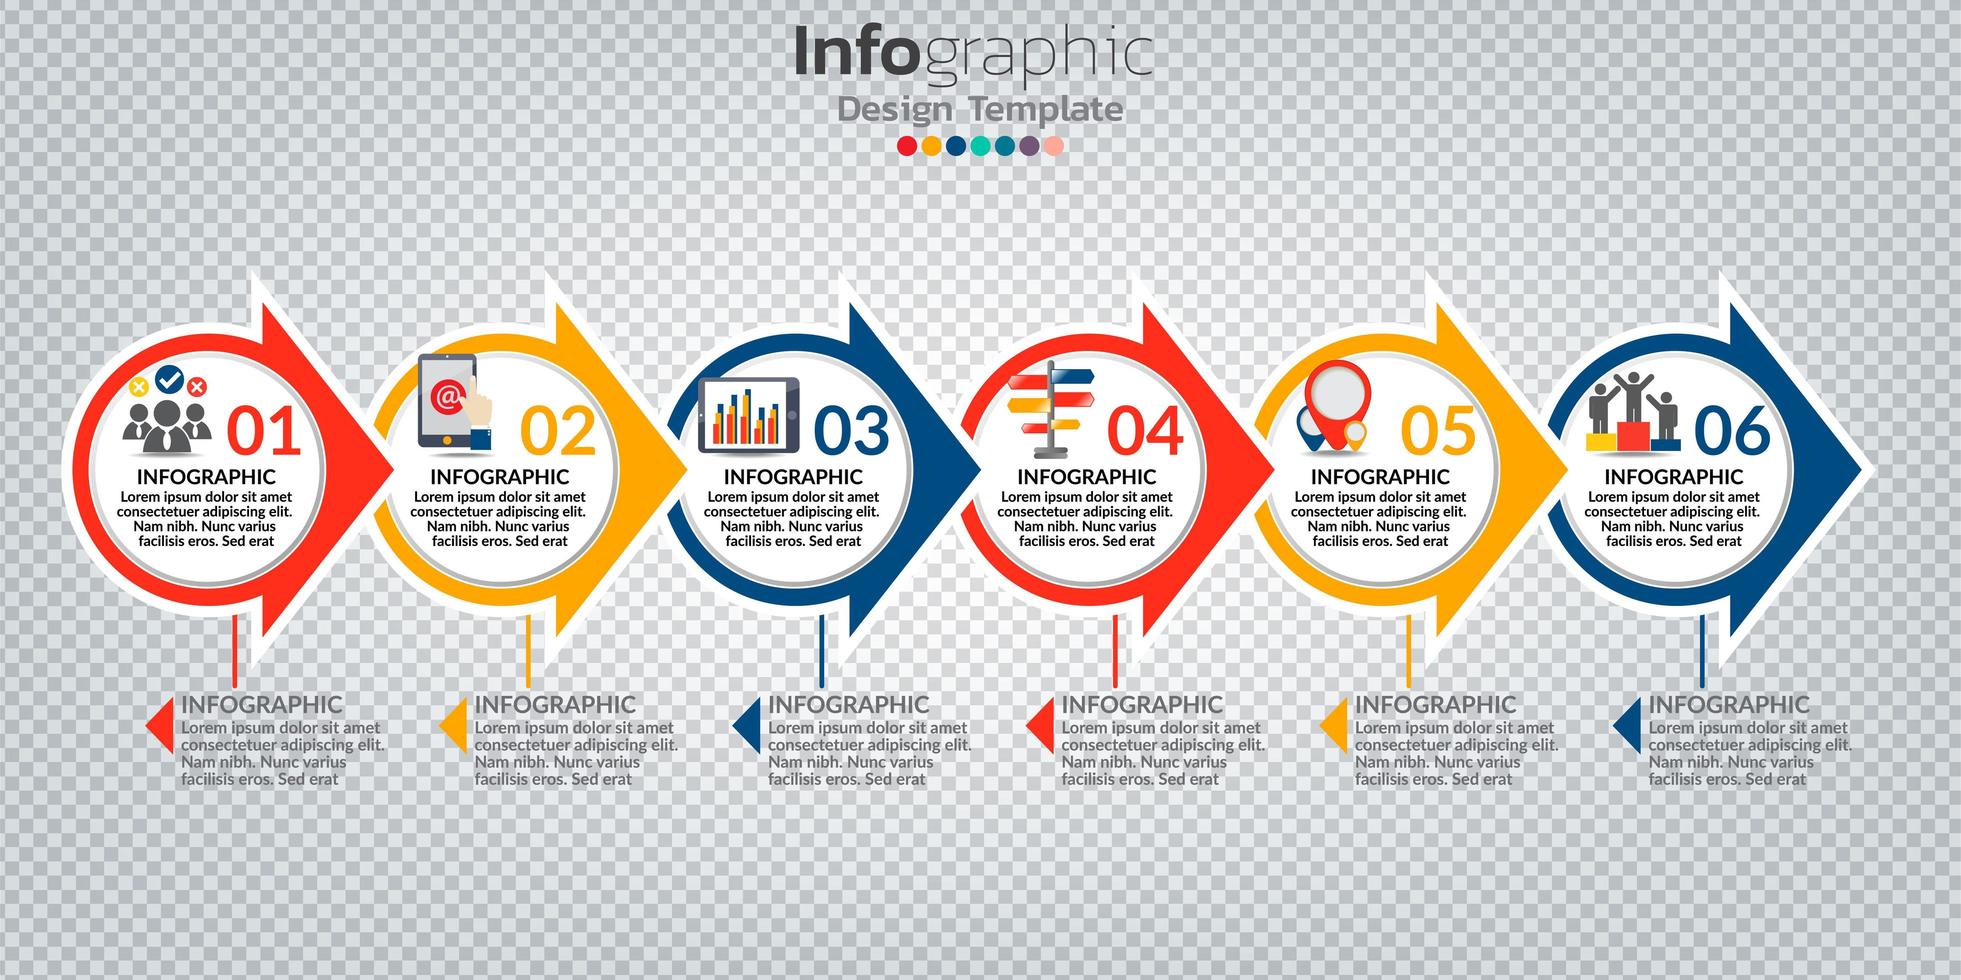 infografía en concepto de negocio con 8 opciones, pasos o procesos. vector